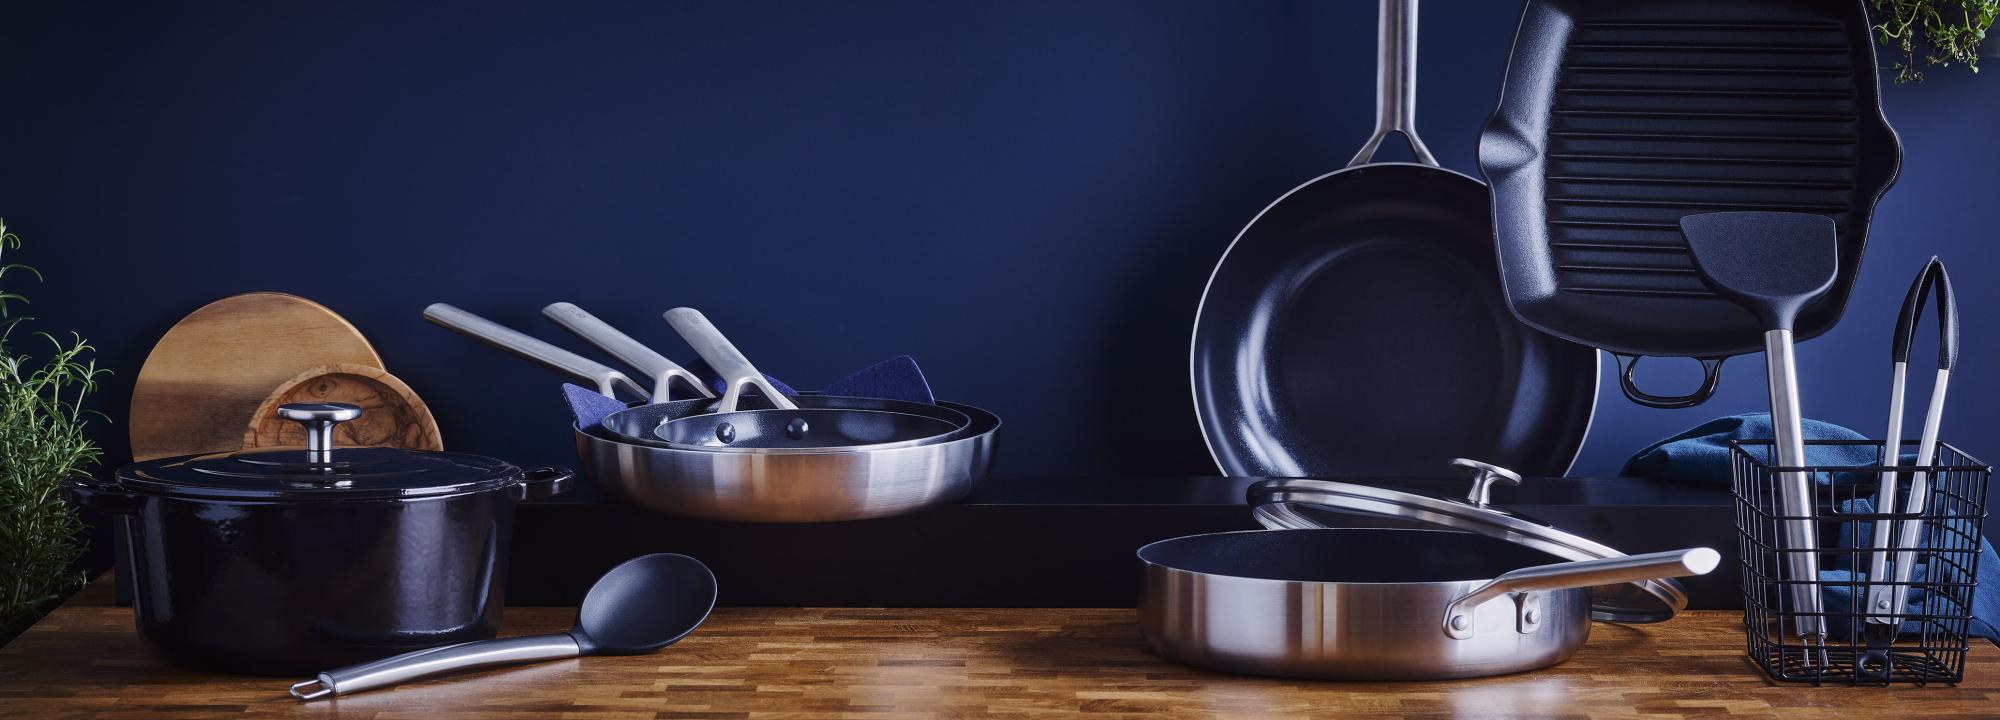 Royal van Kempen & Begeer cookware cutlery ovenware